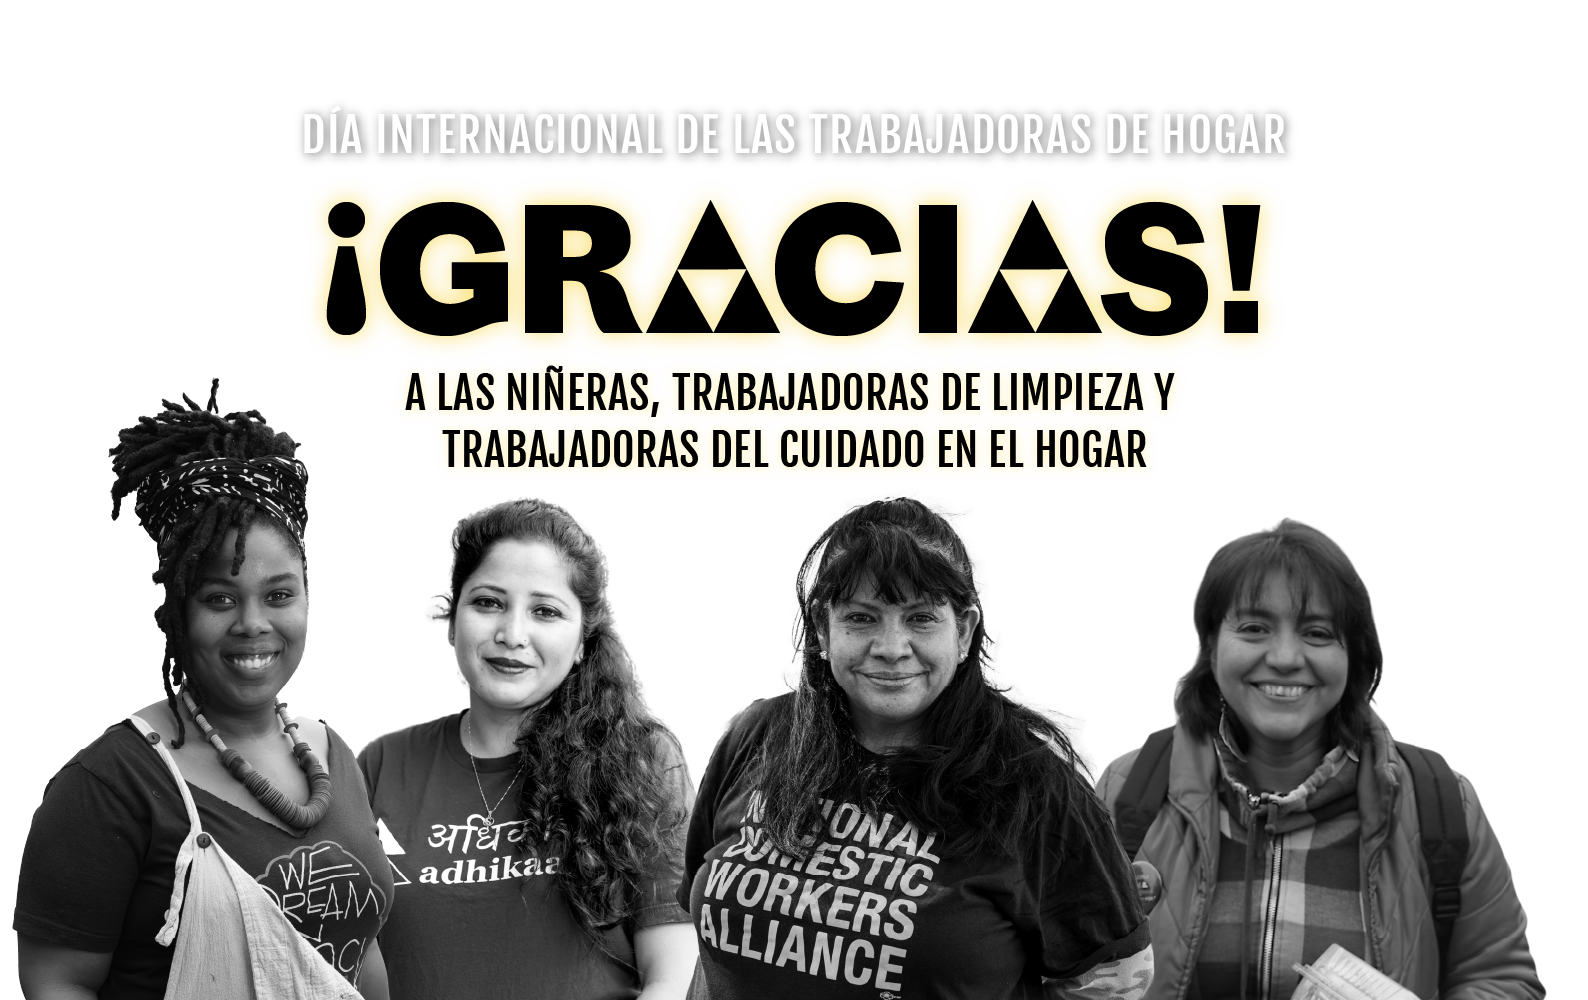 Día Internacional de las Trabajadoras de Hogar ~ ¡Gracias a las niñeras, trabajadoras de limpieza y trabajadoras del cuidado en el hogar!